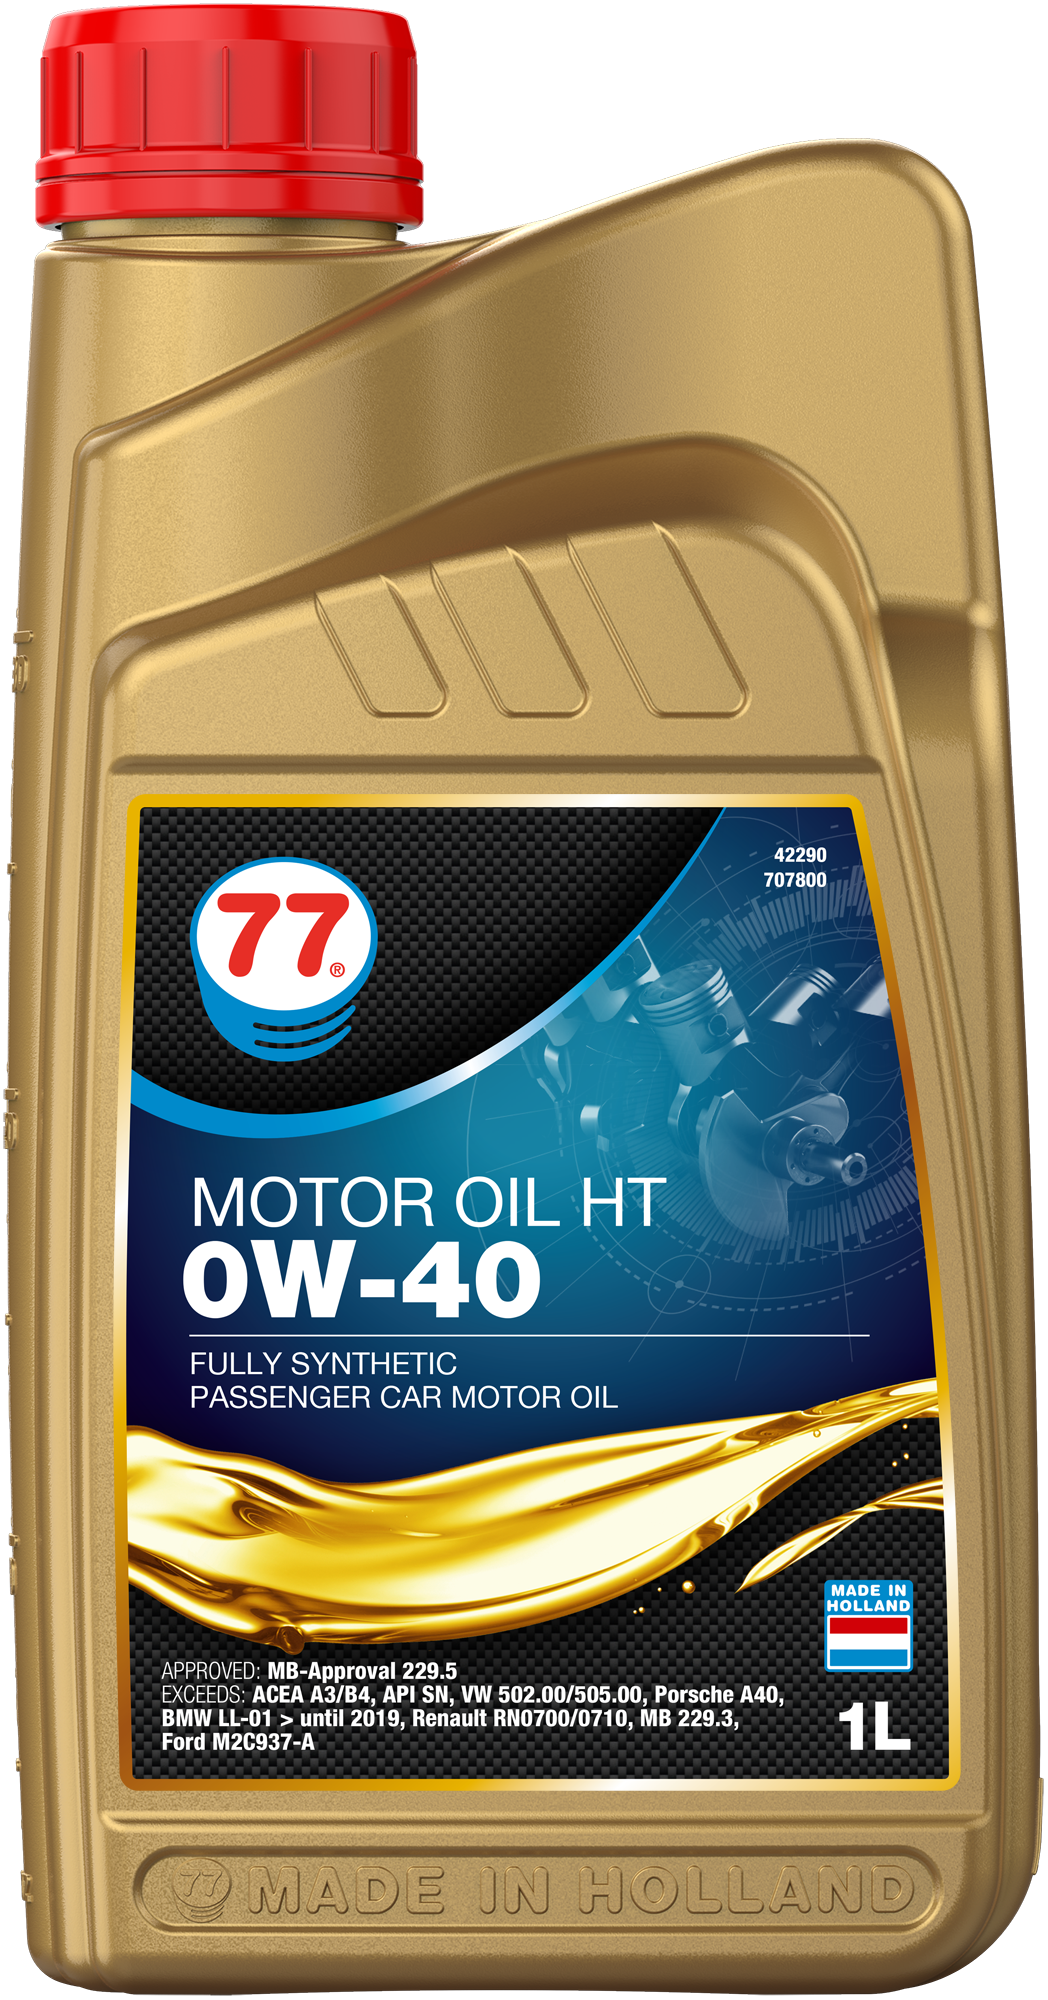 4229-1 Motor Oil HT 0W-40 van 77 lubricants is een volledig synthetische olie voor de nieuwste generatie motoren en speciaal geformuleerd om te voldoen aan de eisen van de nieuwste generatie benzine-en dieselmotoren.